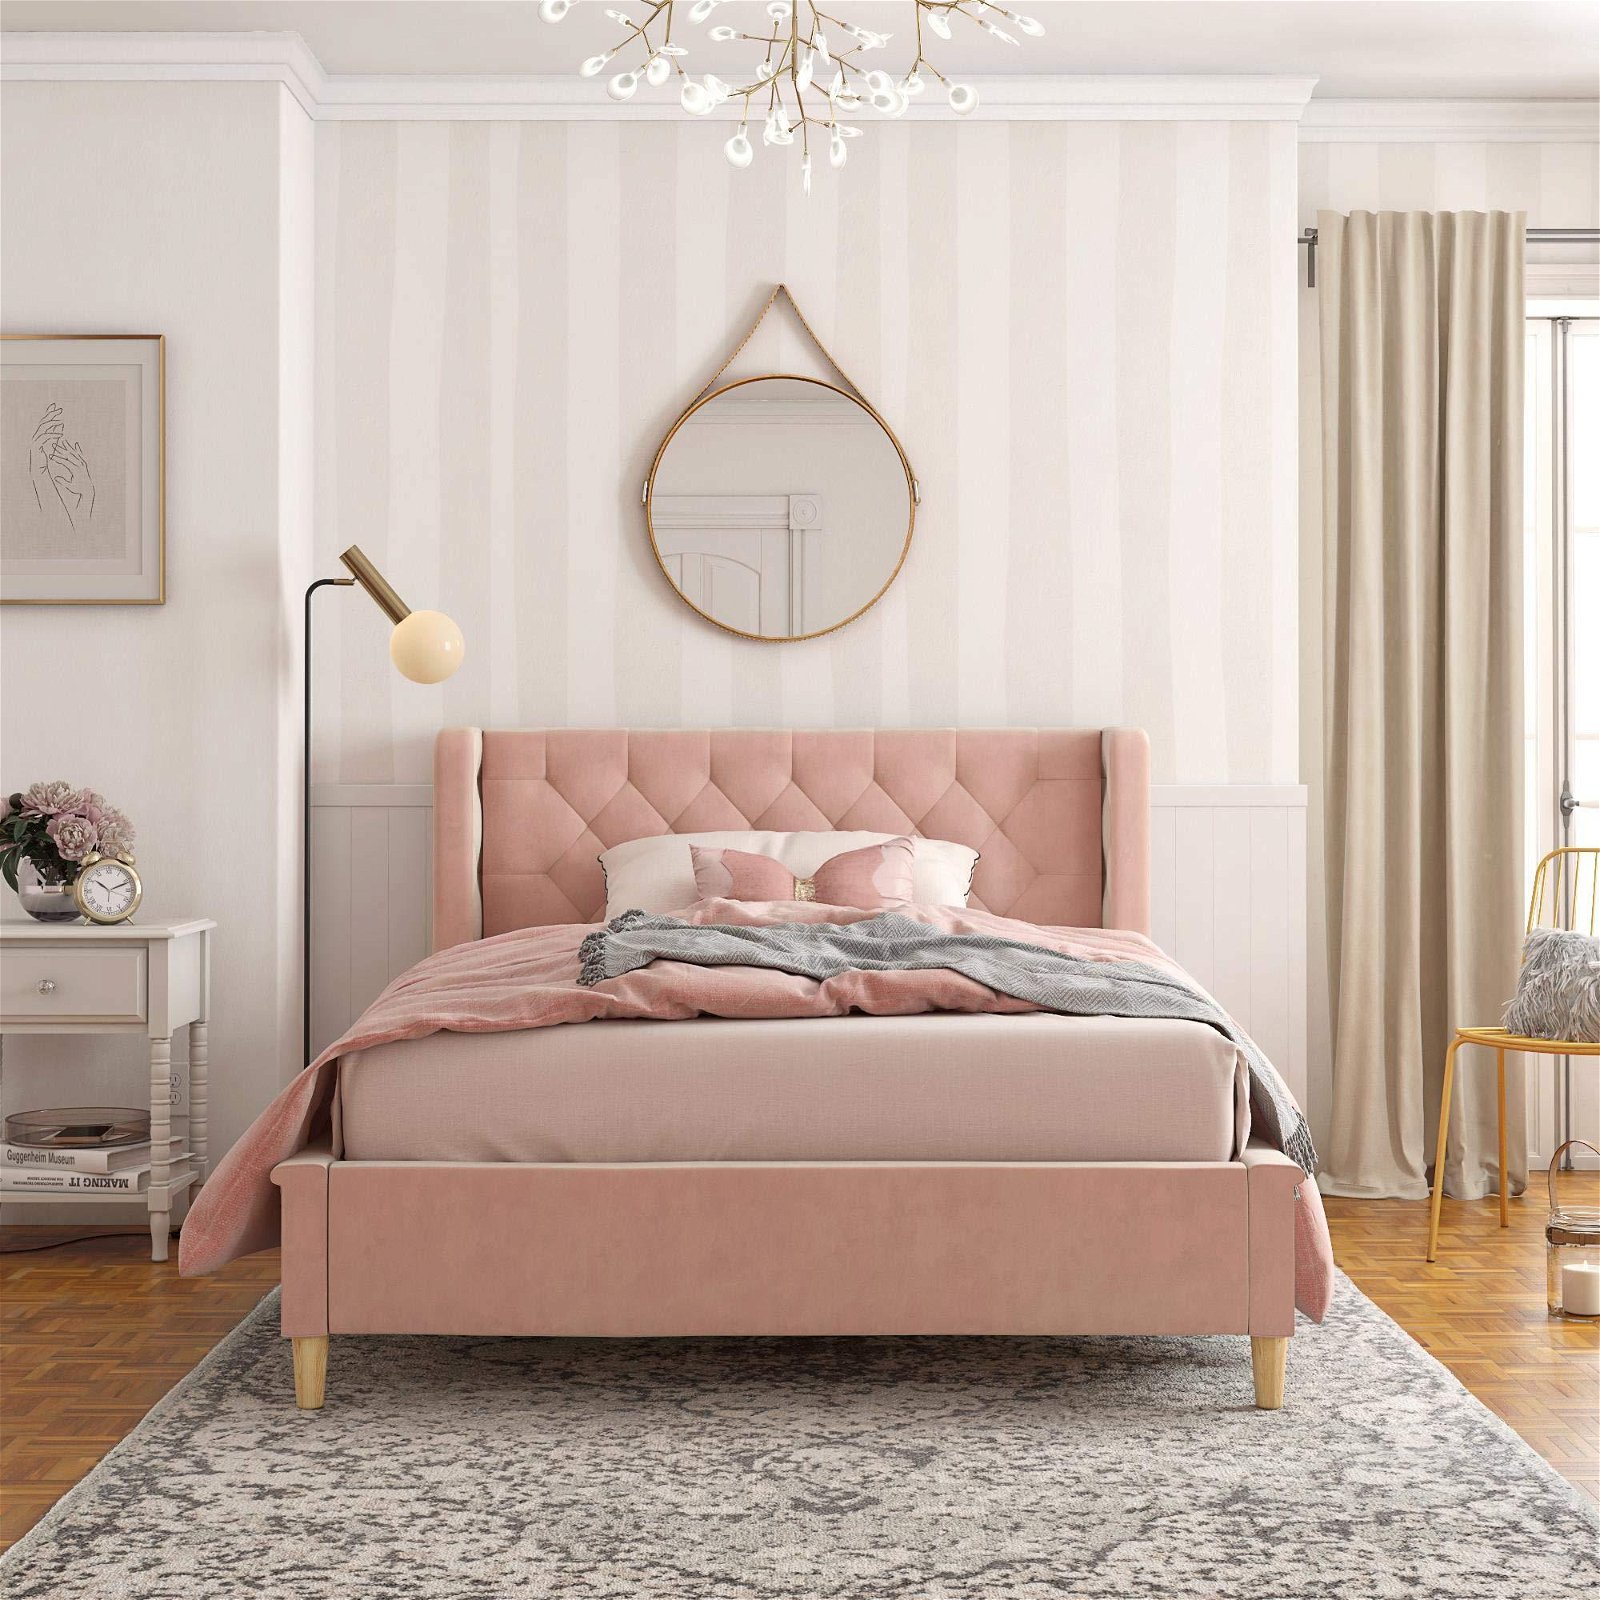 Umikk Modern European Pink Full Size Upholstered Bed for Girls and Boys 4